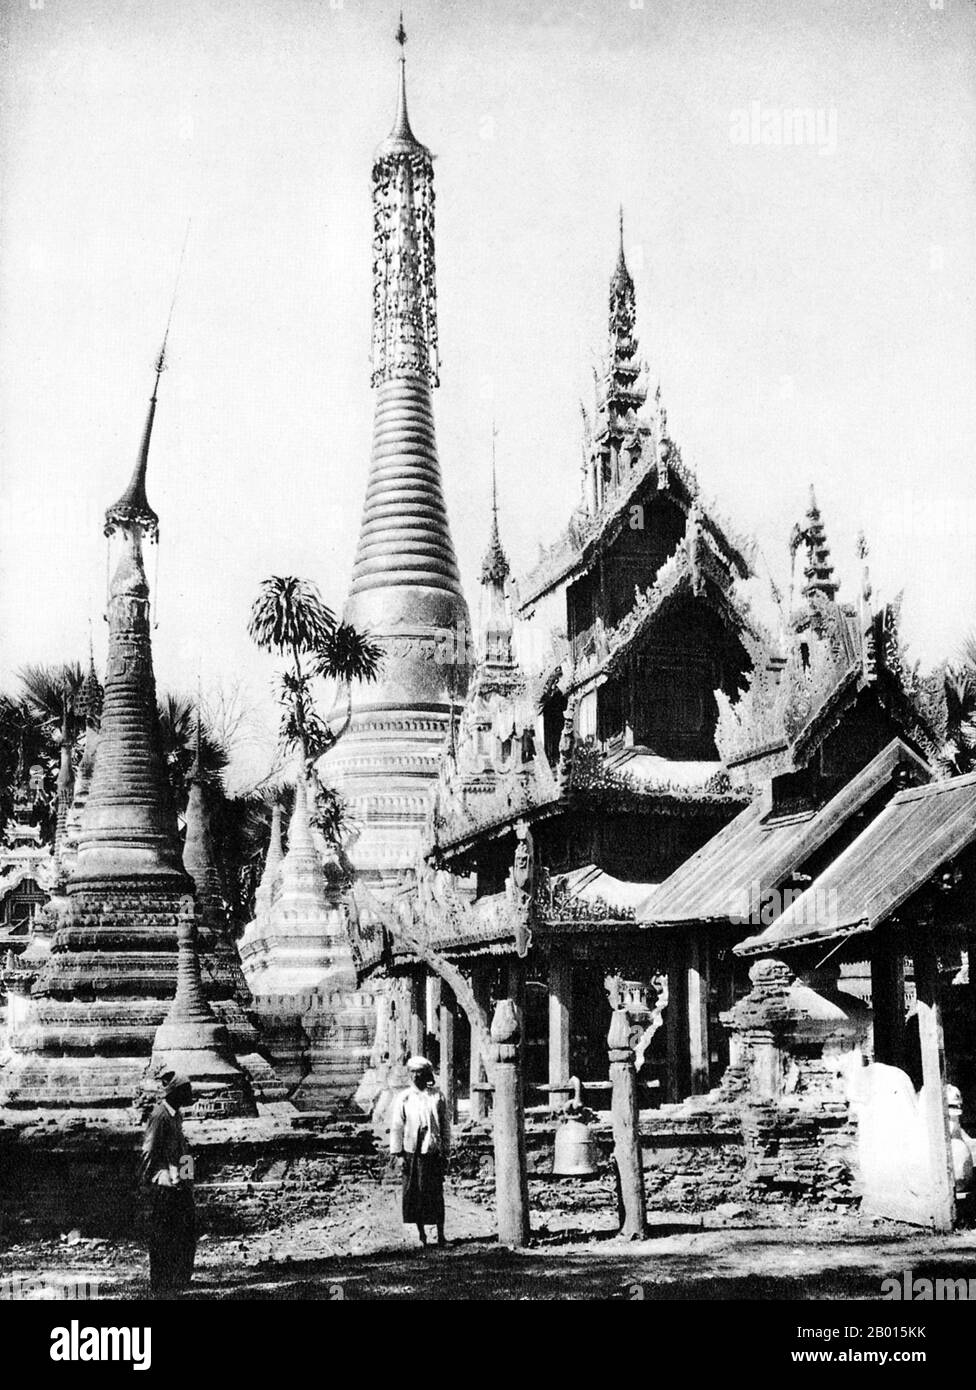 Birmanie/Myanmar: Un temple bouddhiste à Namtok, dans le sud de l'État de Shan, c. années 1920. La légende attribue la première doctrine bouddhiste en Birmanie à 228 BCE lorsque Sohn Uttar Sthavira, un des moines royaux de l'empereur Ashoka le Grand de l'Inde, est venu au pays avec d'autres moines et textes sacrés. Cependant, l'ère du bouddhisme a vraiment commencé au XIe siècle après que le roi Anawrahta de Pagan (Bagan) a été converti au bouddhisme Theravada. Aujourd'hui, 89% de la population birmane est bouddhiste Theravada. Banque D'Images